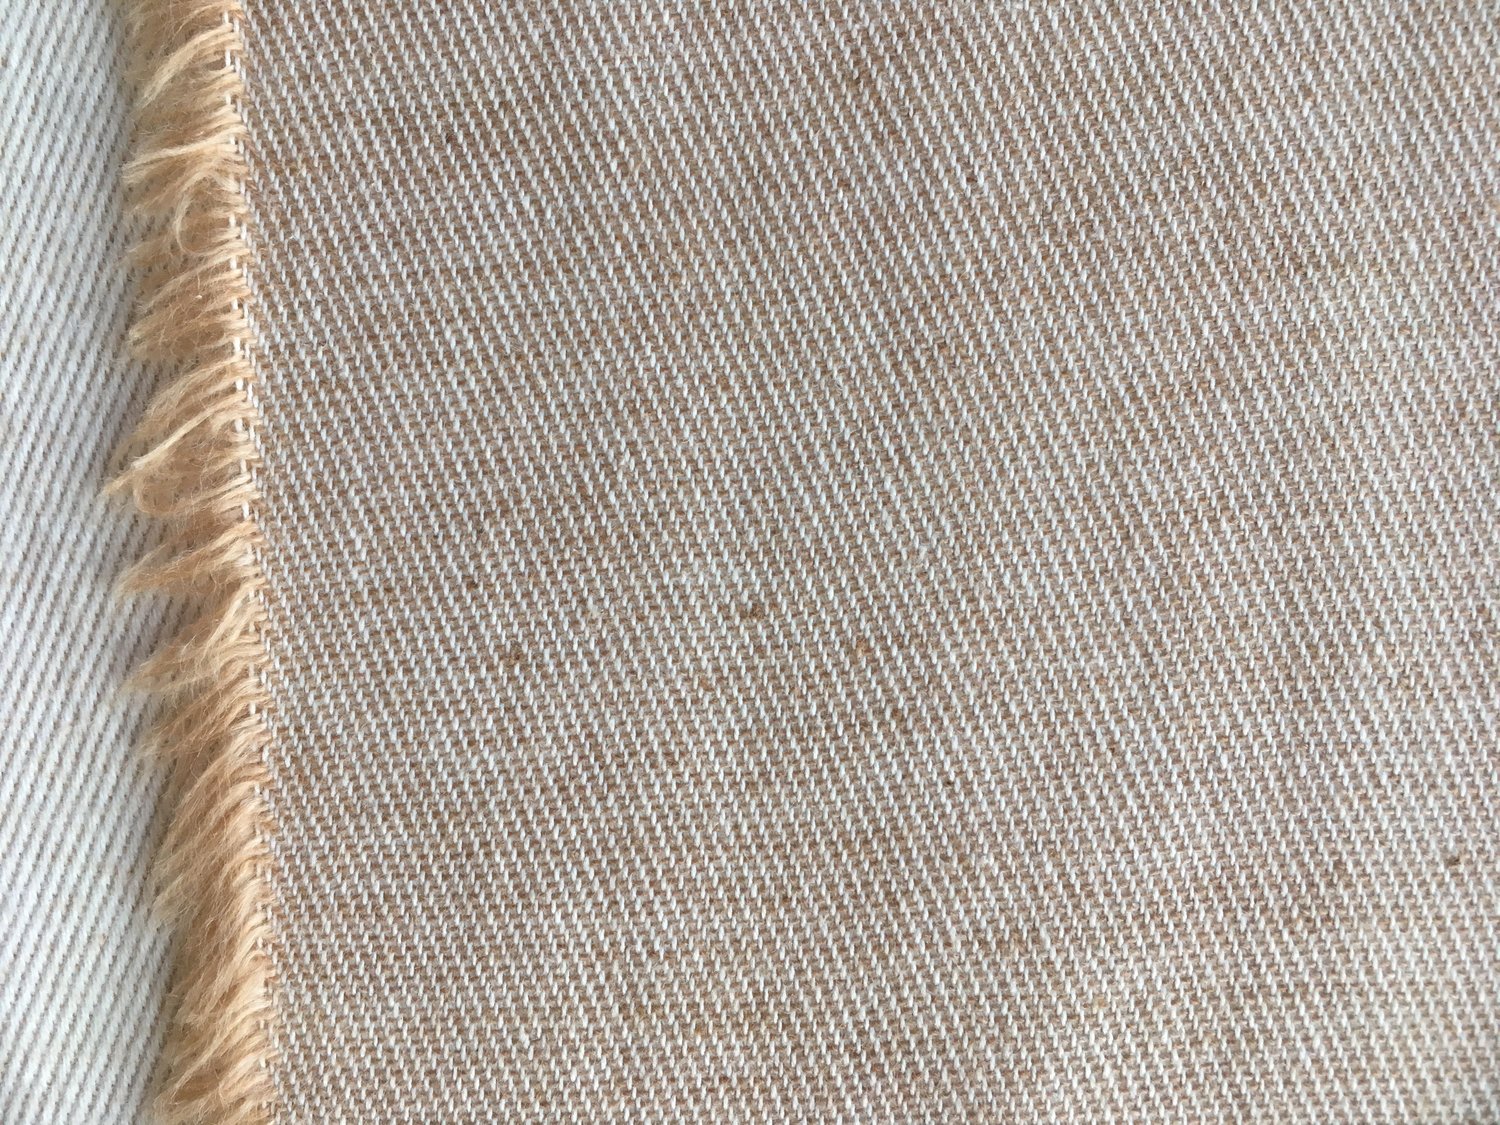 Copper Brown Linen Twill 3402 – Fabrics4Fashion